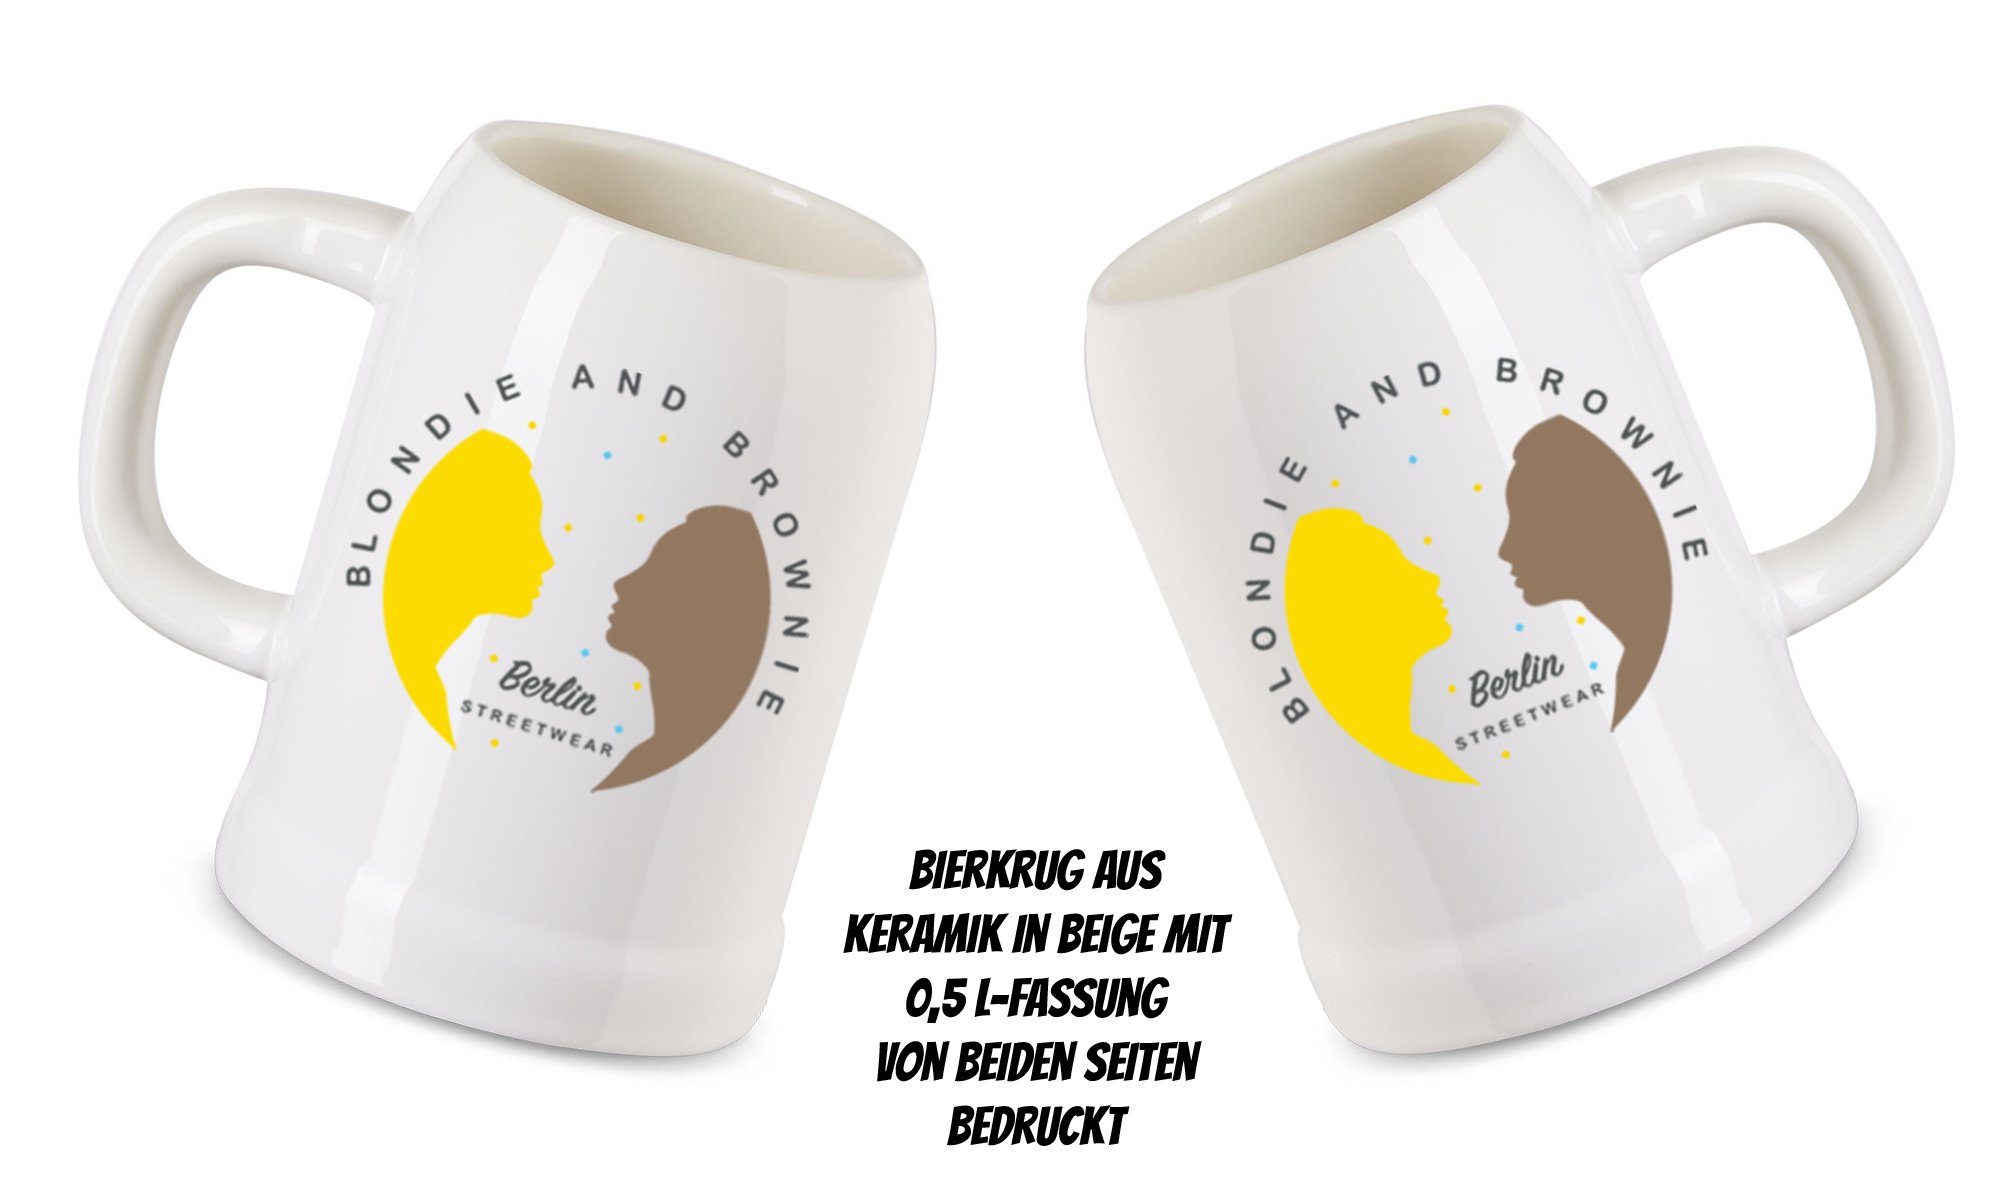 Blondie & Brownie Tag, Henkel Fest Bier Vater Keramik, Stapdad 0,5L mit Keramik, Grill Stiefvater Beige Bierkrug Papa